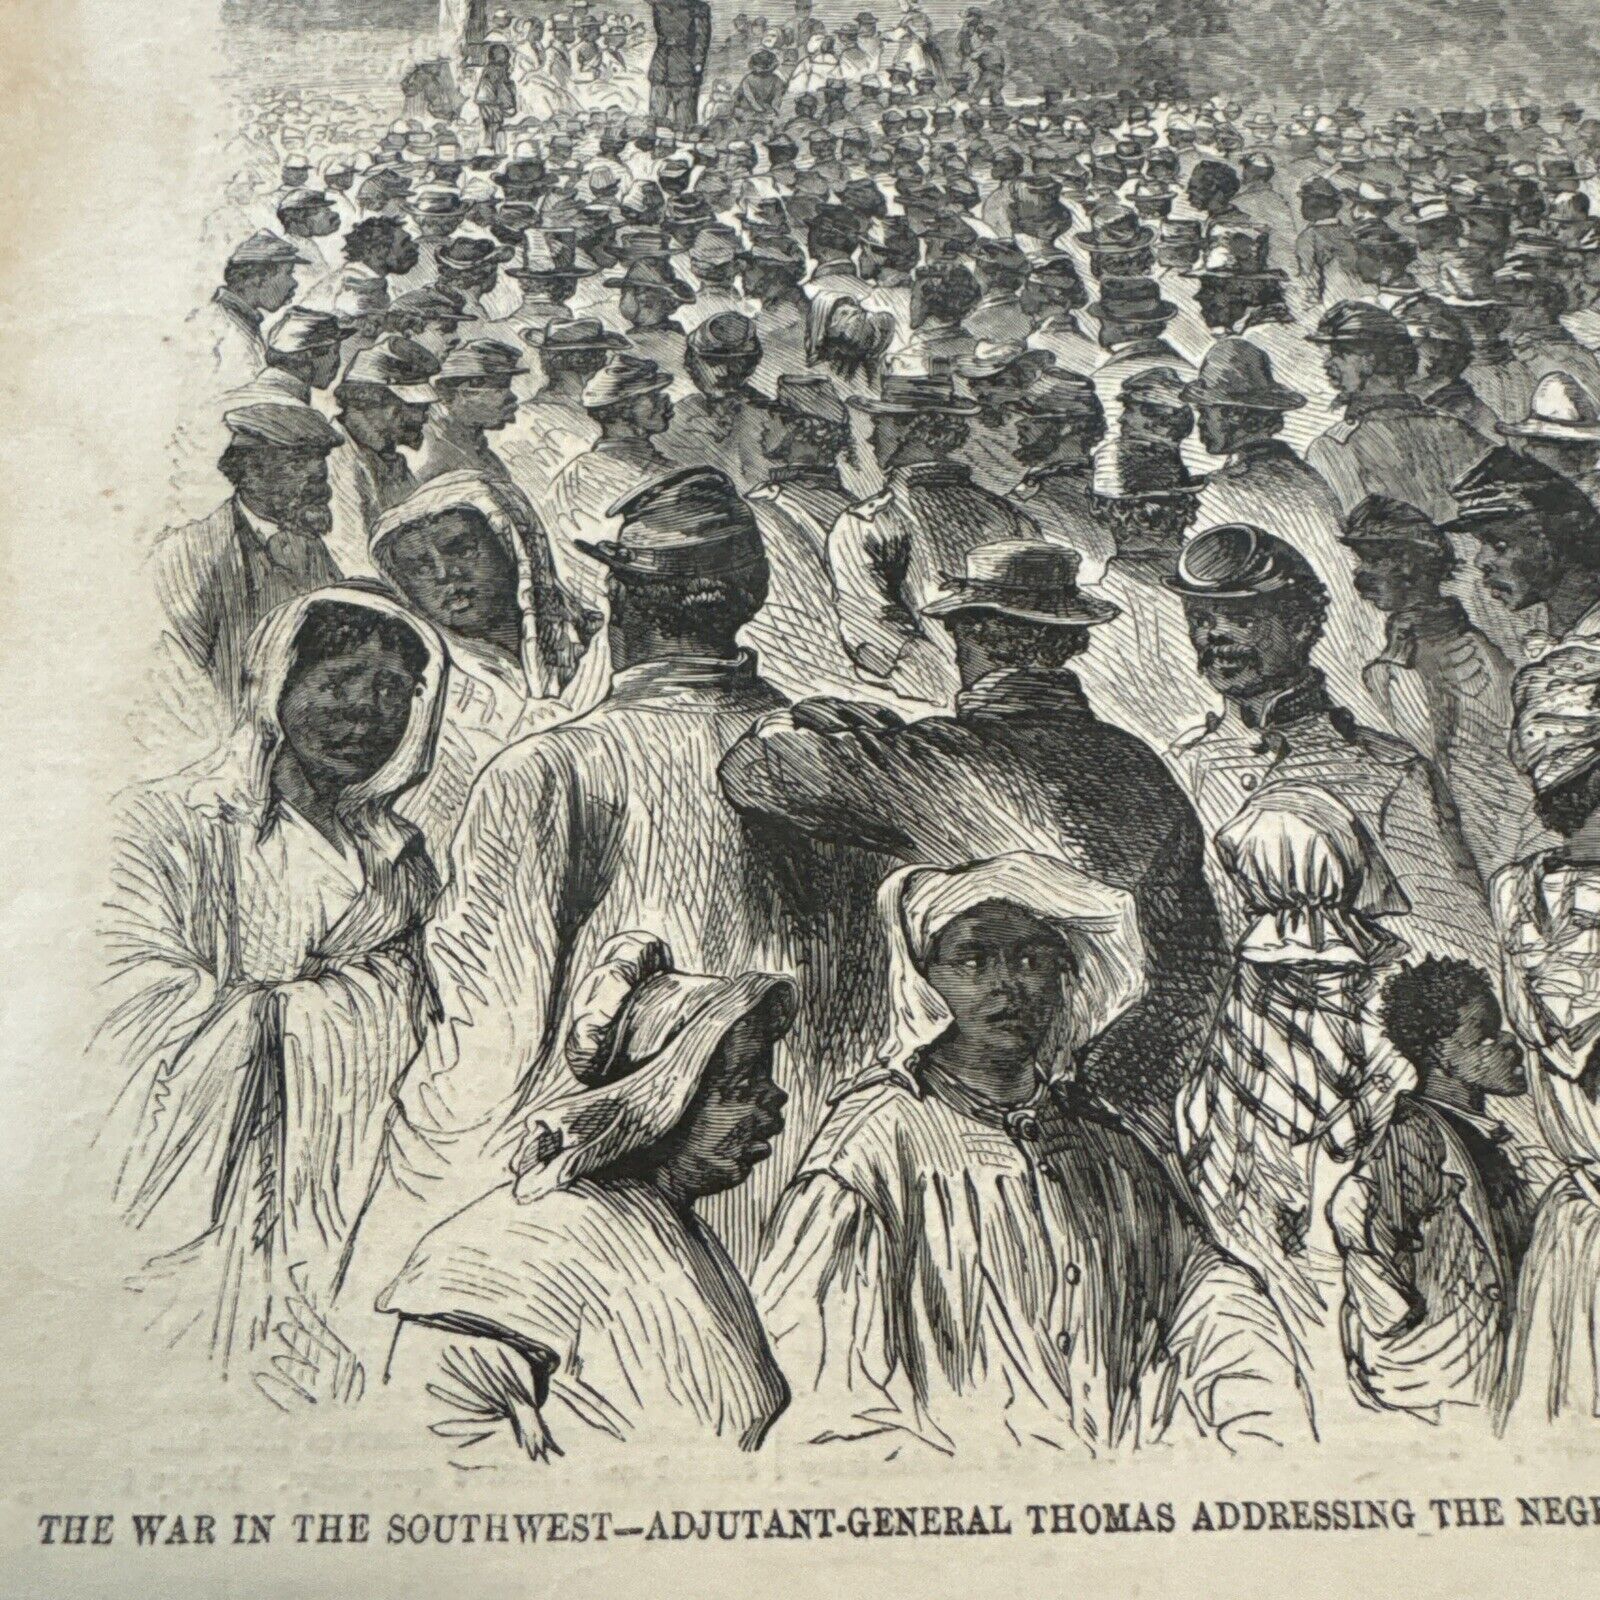 Original Civil War Nov 14 1862 Harper's Weekly Black Troops Freedom - Dunderberg